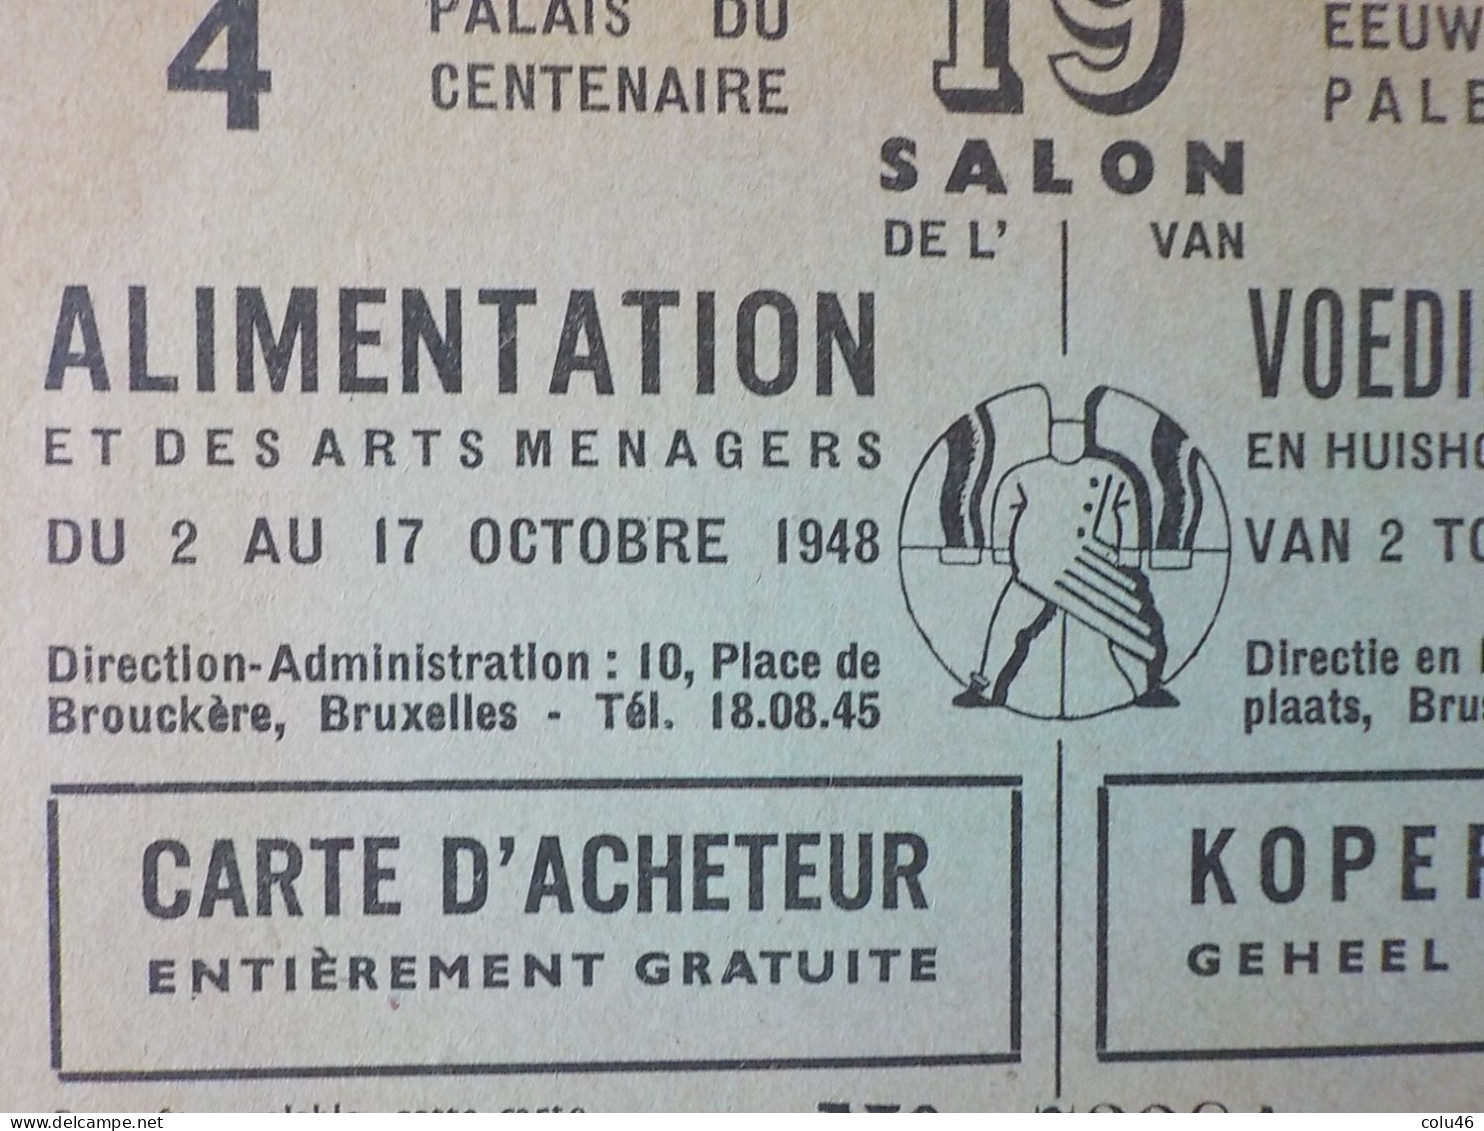 1948 Bruxelles Pub Palais Du Centenaire 19ème Salon Alimentation & Arts Ménagers Eeuwfeest Voedingsmiddelen - Feesten En Evenementen